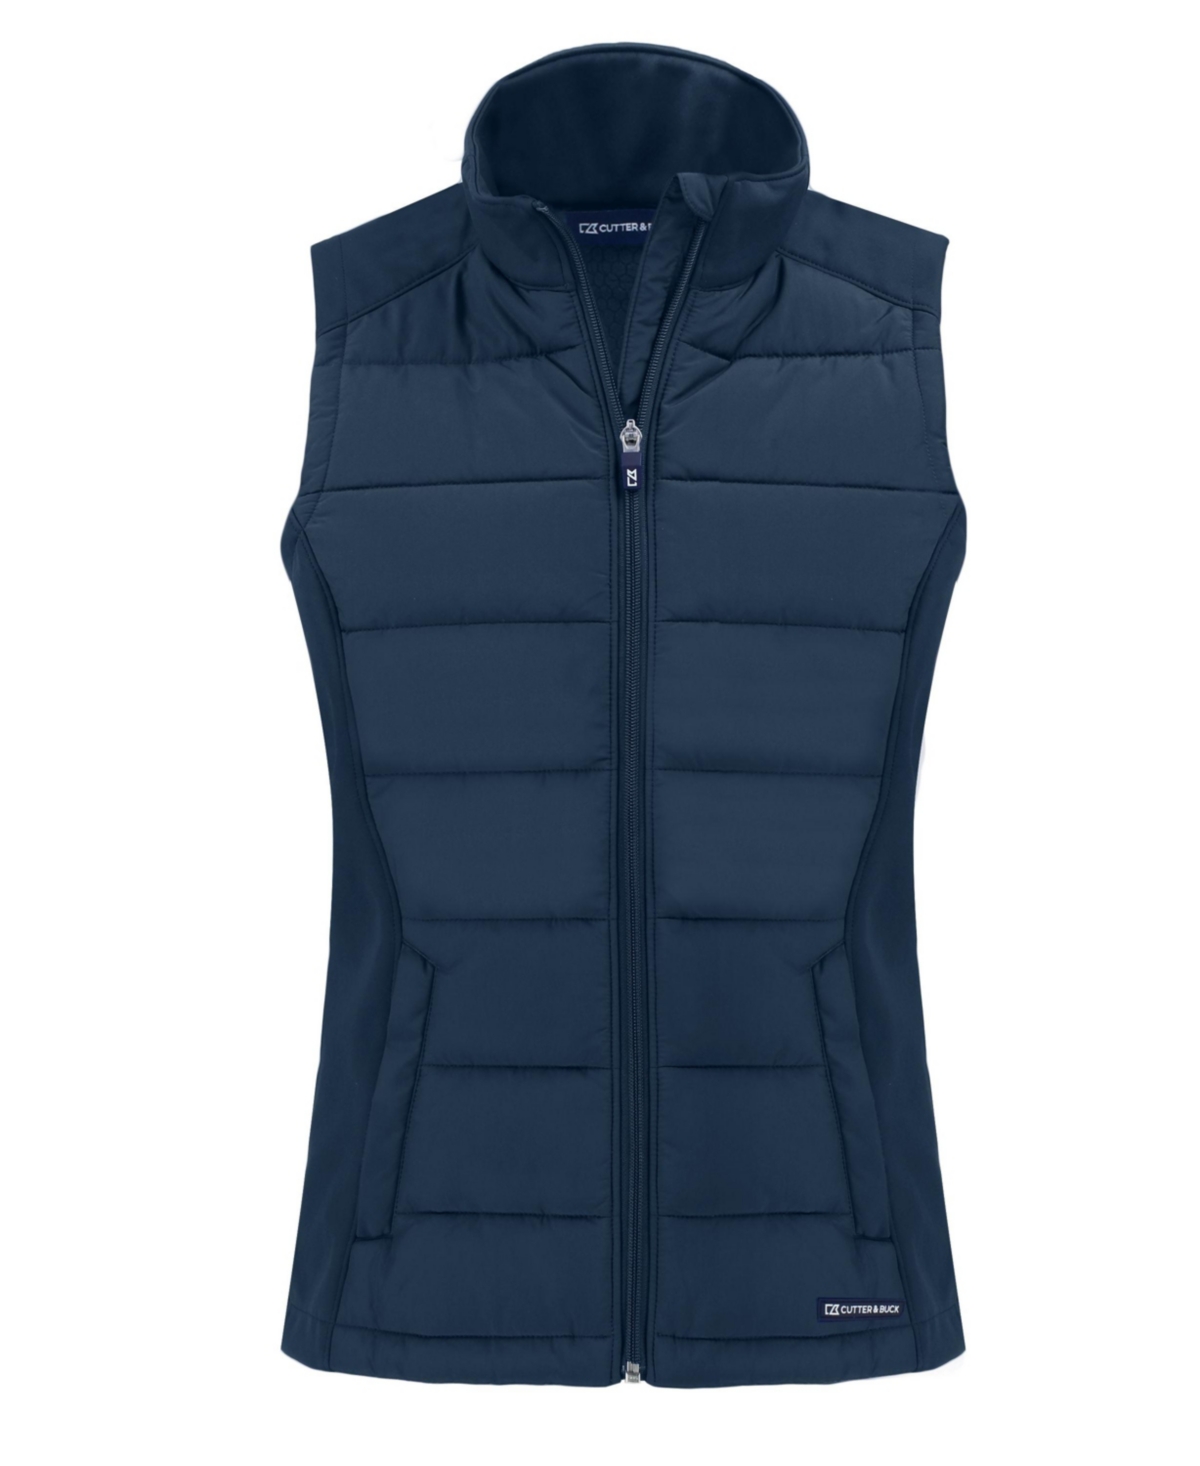 Women's Evoke Hybrid Eco Softshell Recycled Full Zip Vest - Tour blue